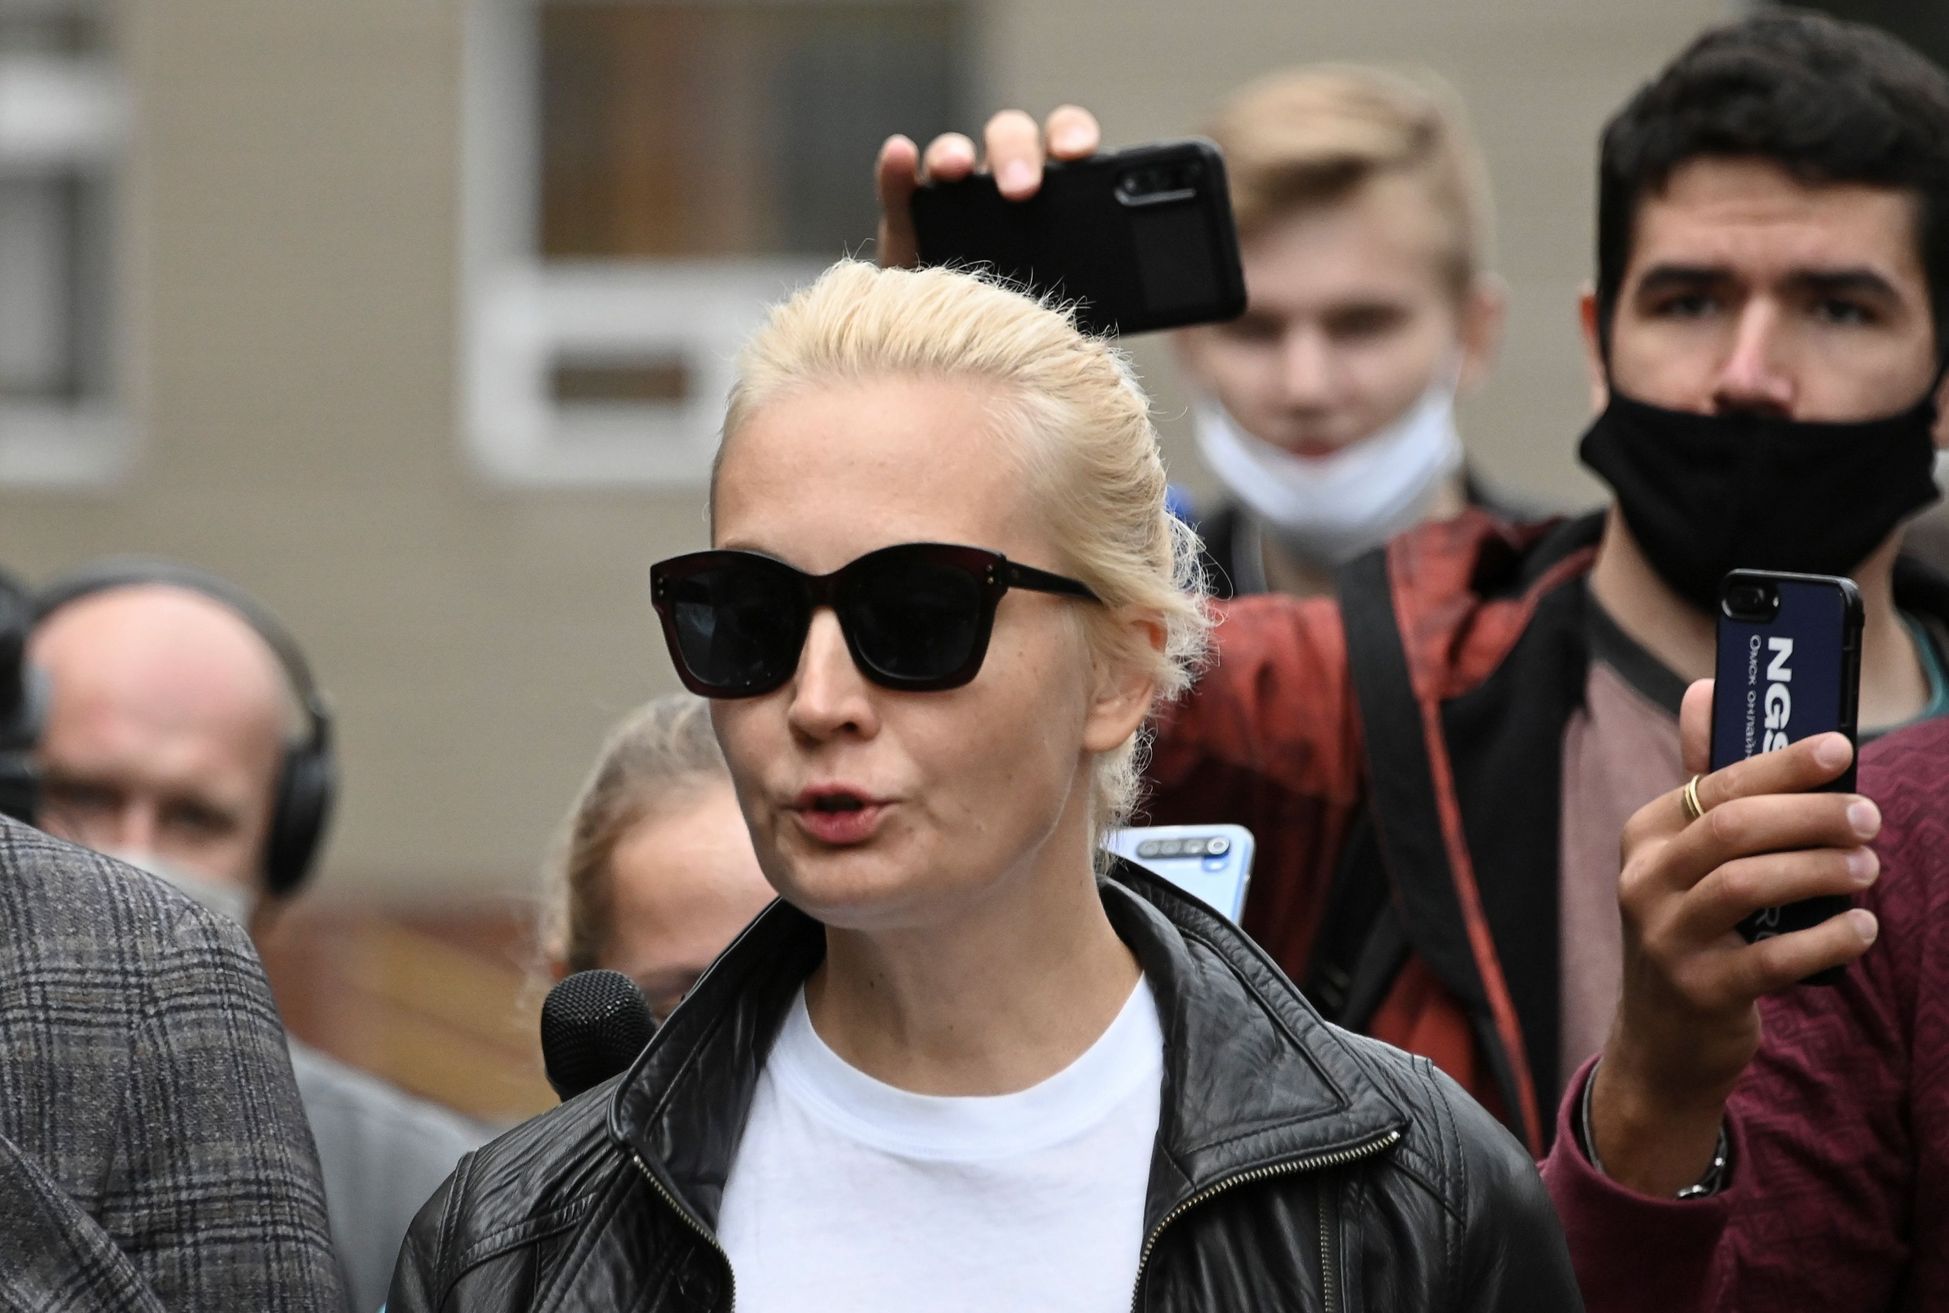 Navalného manželka Julija Navalná přijela ve čtvrtek večer do Omsku.